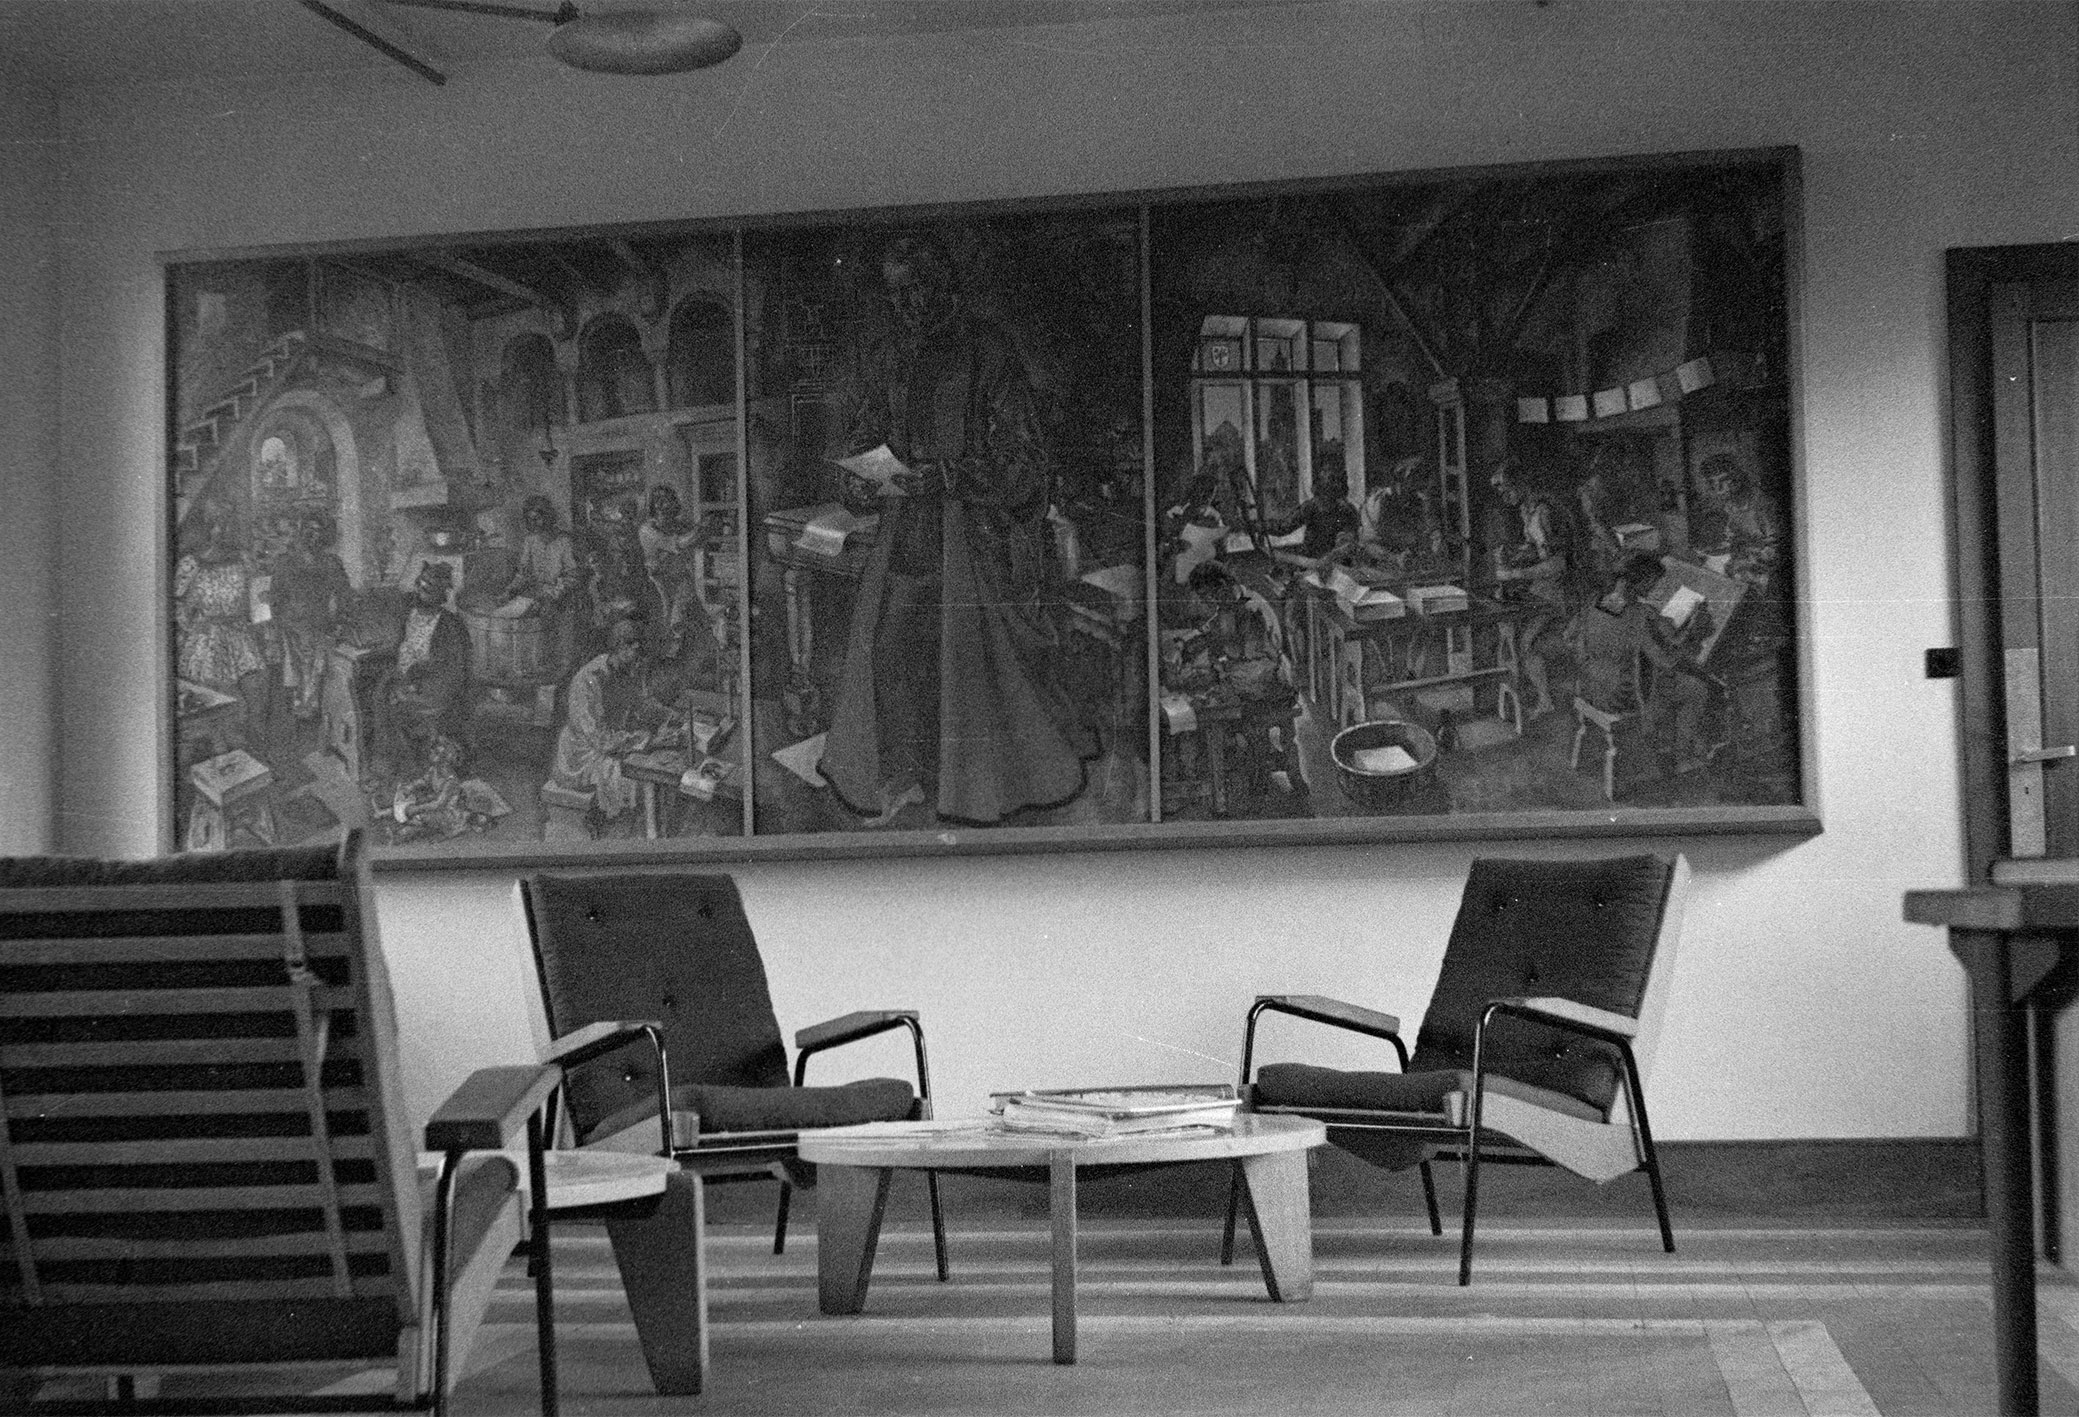 Hall d’accueil de l’imprimerie Berger-Levrault, Nancy, équipé de fauteuils Visiteur et de guéridons bas, c. 1942.